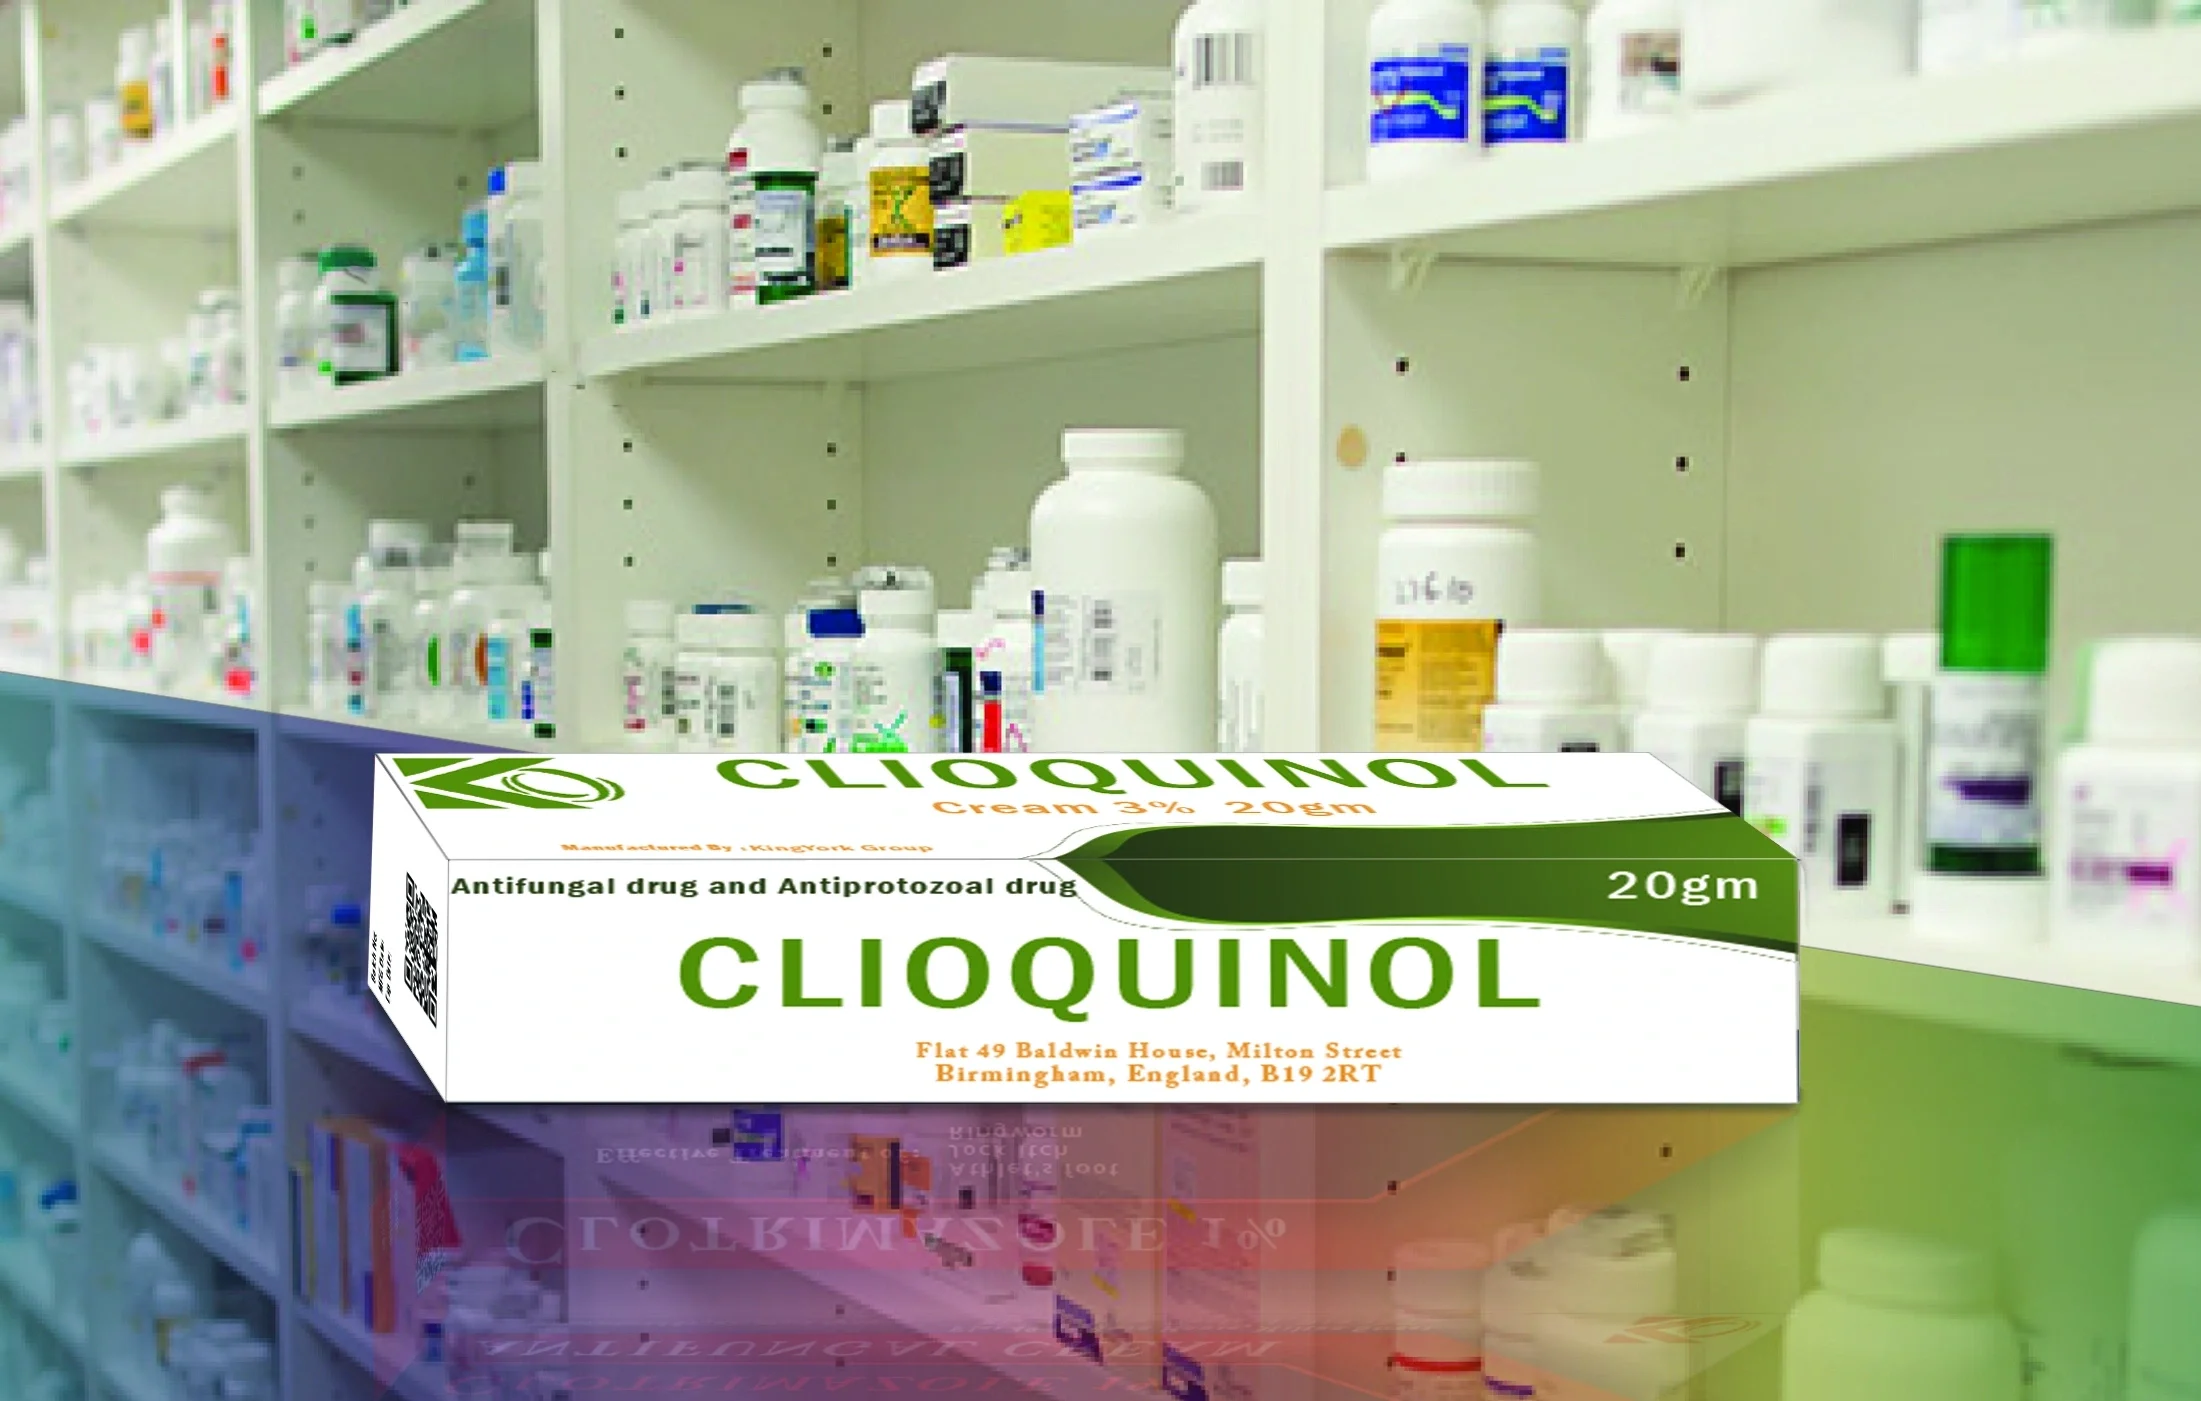 'Clioquinol', 'Clioquinol Ointment', 'Clioquinol cream', 'Clioquinol gel'